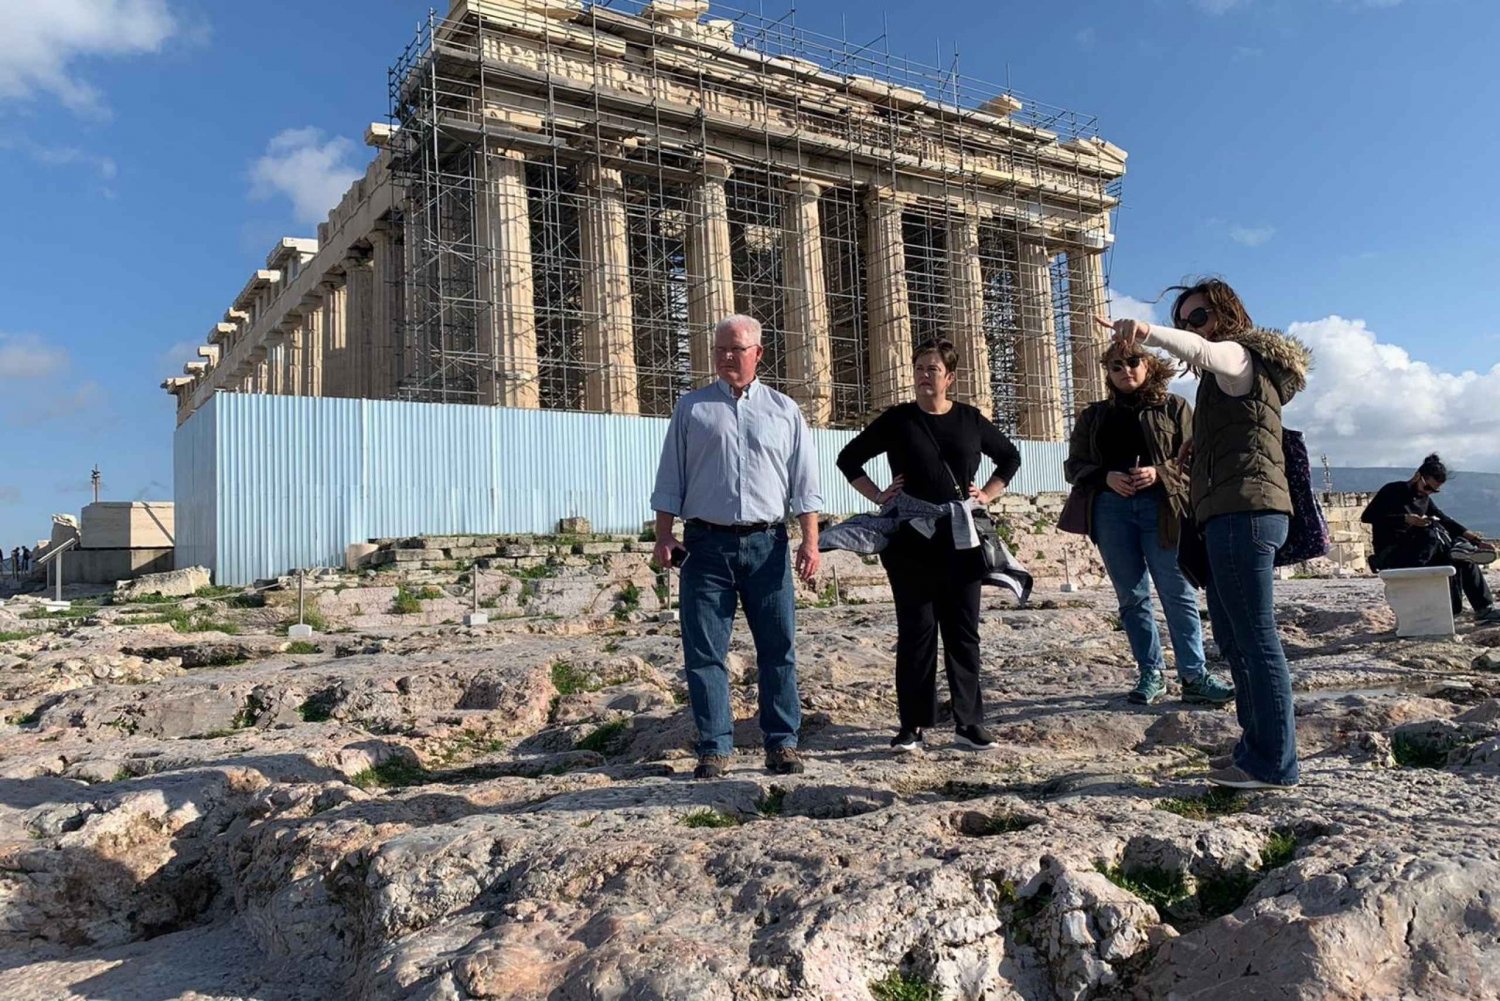 Athene: Akropolis, Parthenon en stad privéwandeling